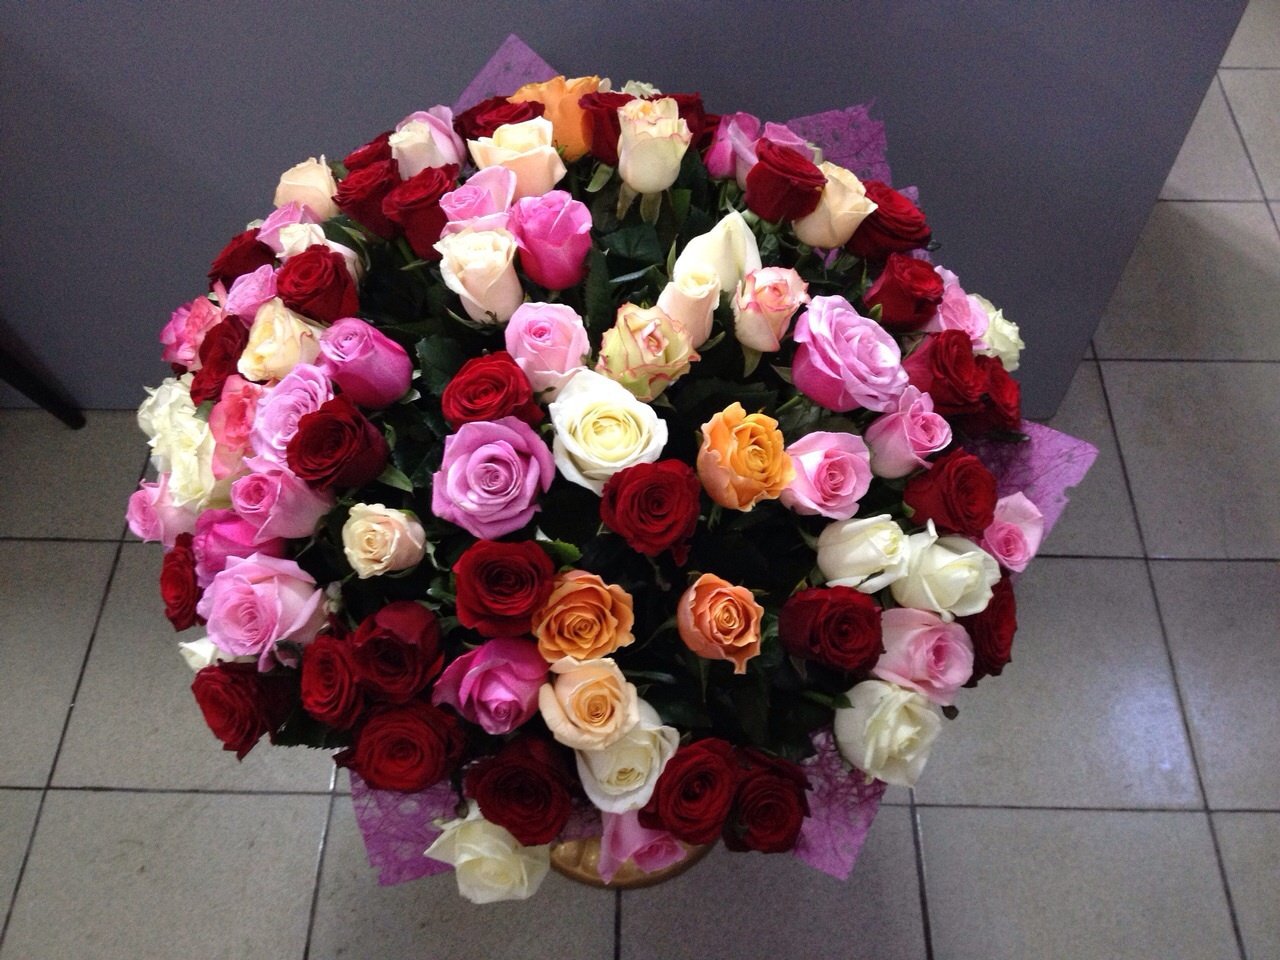 Фото реальных букетов цветов дома. Большие букеты цветов. Шикарный букет из роз. Огромный букет цветов. Красивые большие букеты цветов.